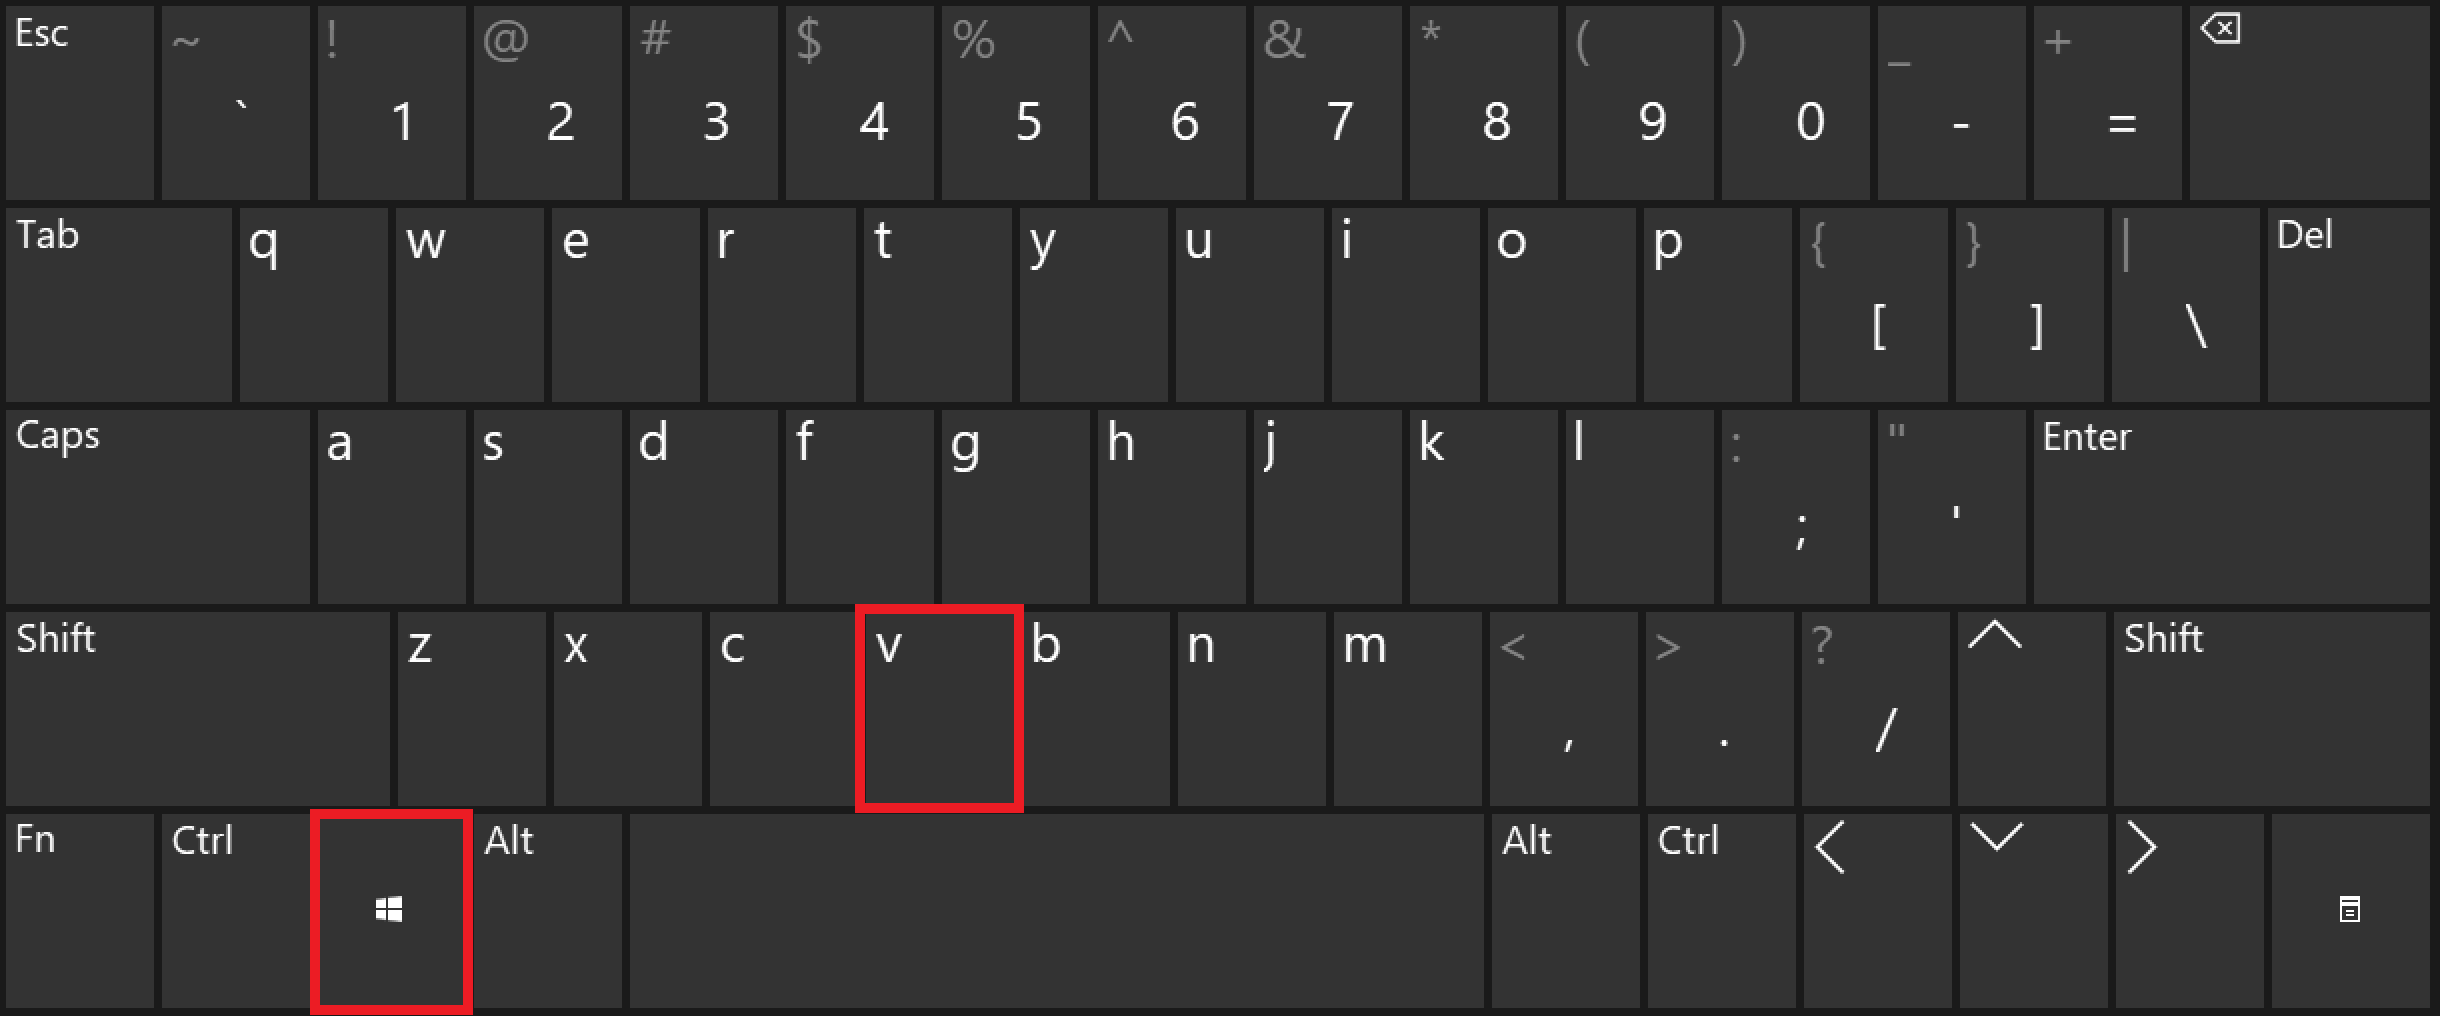 Aprire gli appunti sulla tastiera con la scorciatoia Windows + V